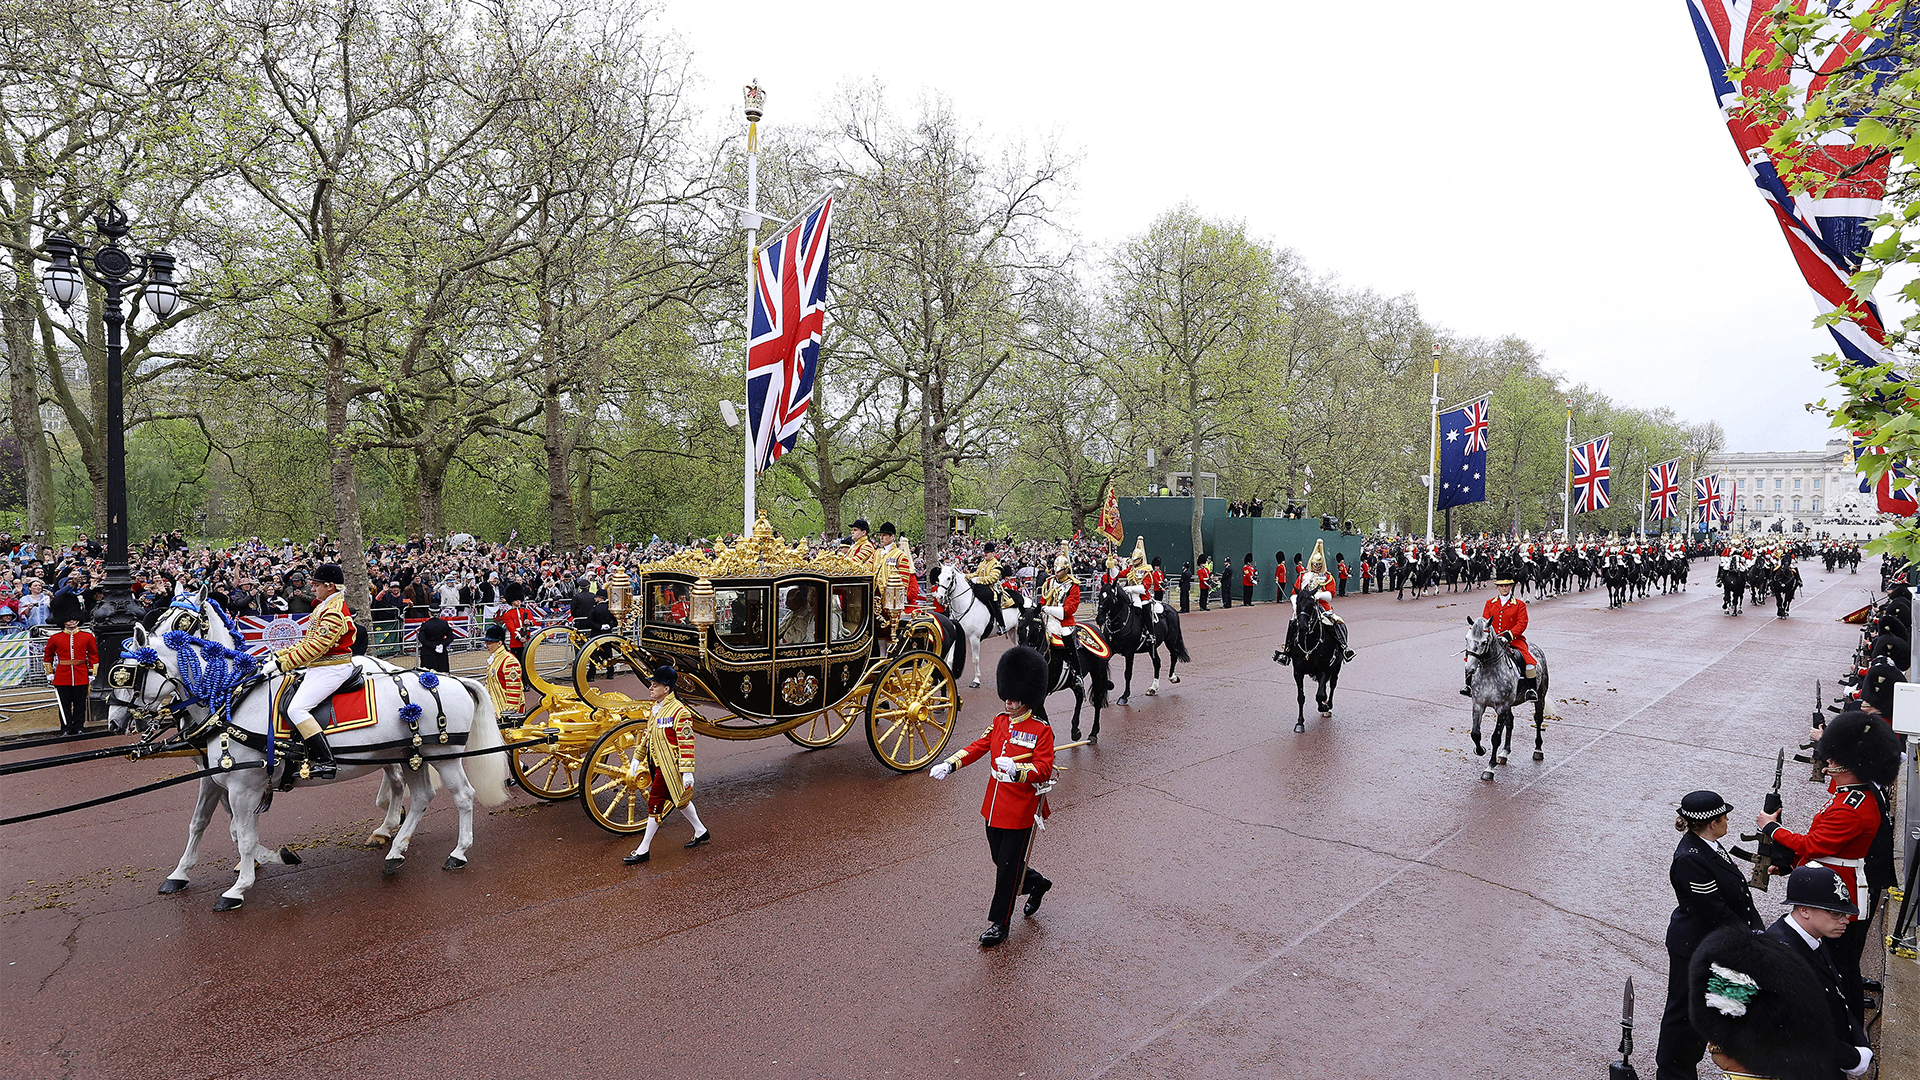 Plus de 2000 invités, des milliers de militaires, des dizaines de milliers de spectateurs et une poignée de manifestants ont convergé vers l’abbaye de Westminster alors que le roi quittait le palais de Buckingham en calèche dorée.